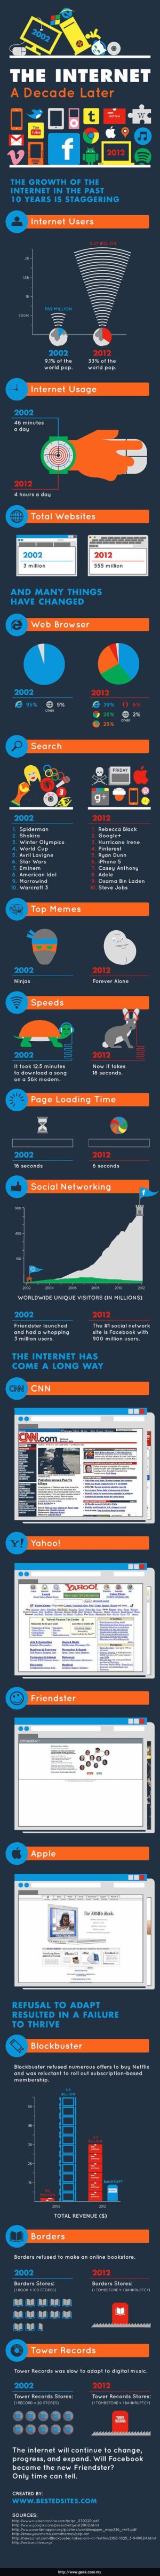 Infografía 10 años de Internet